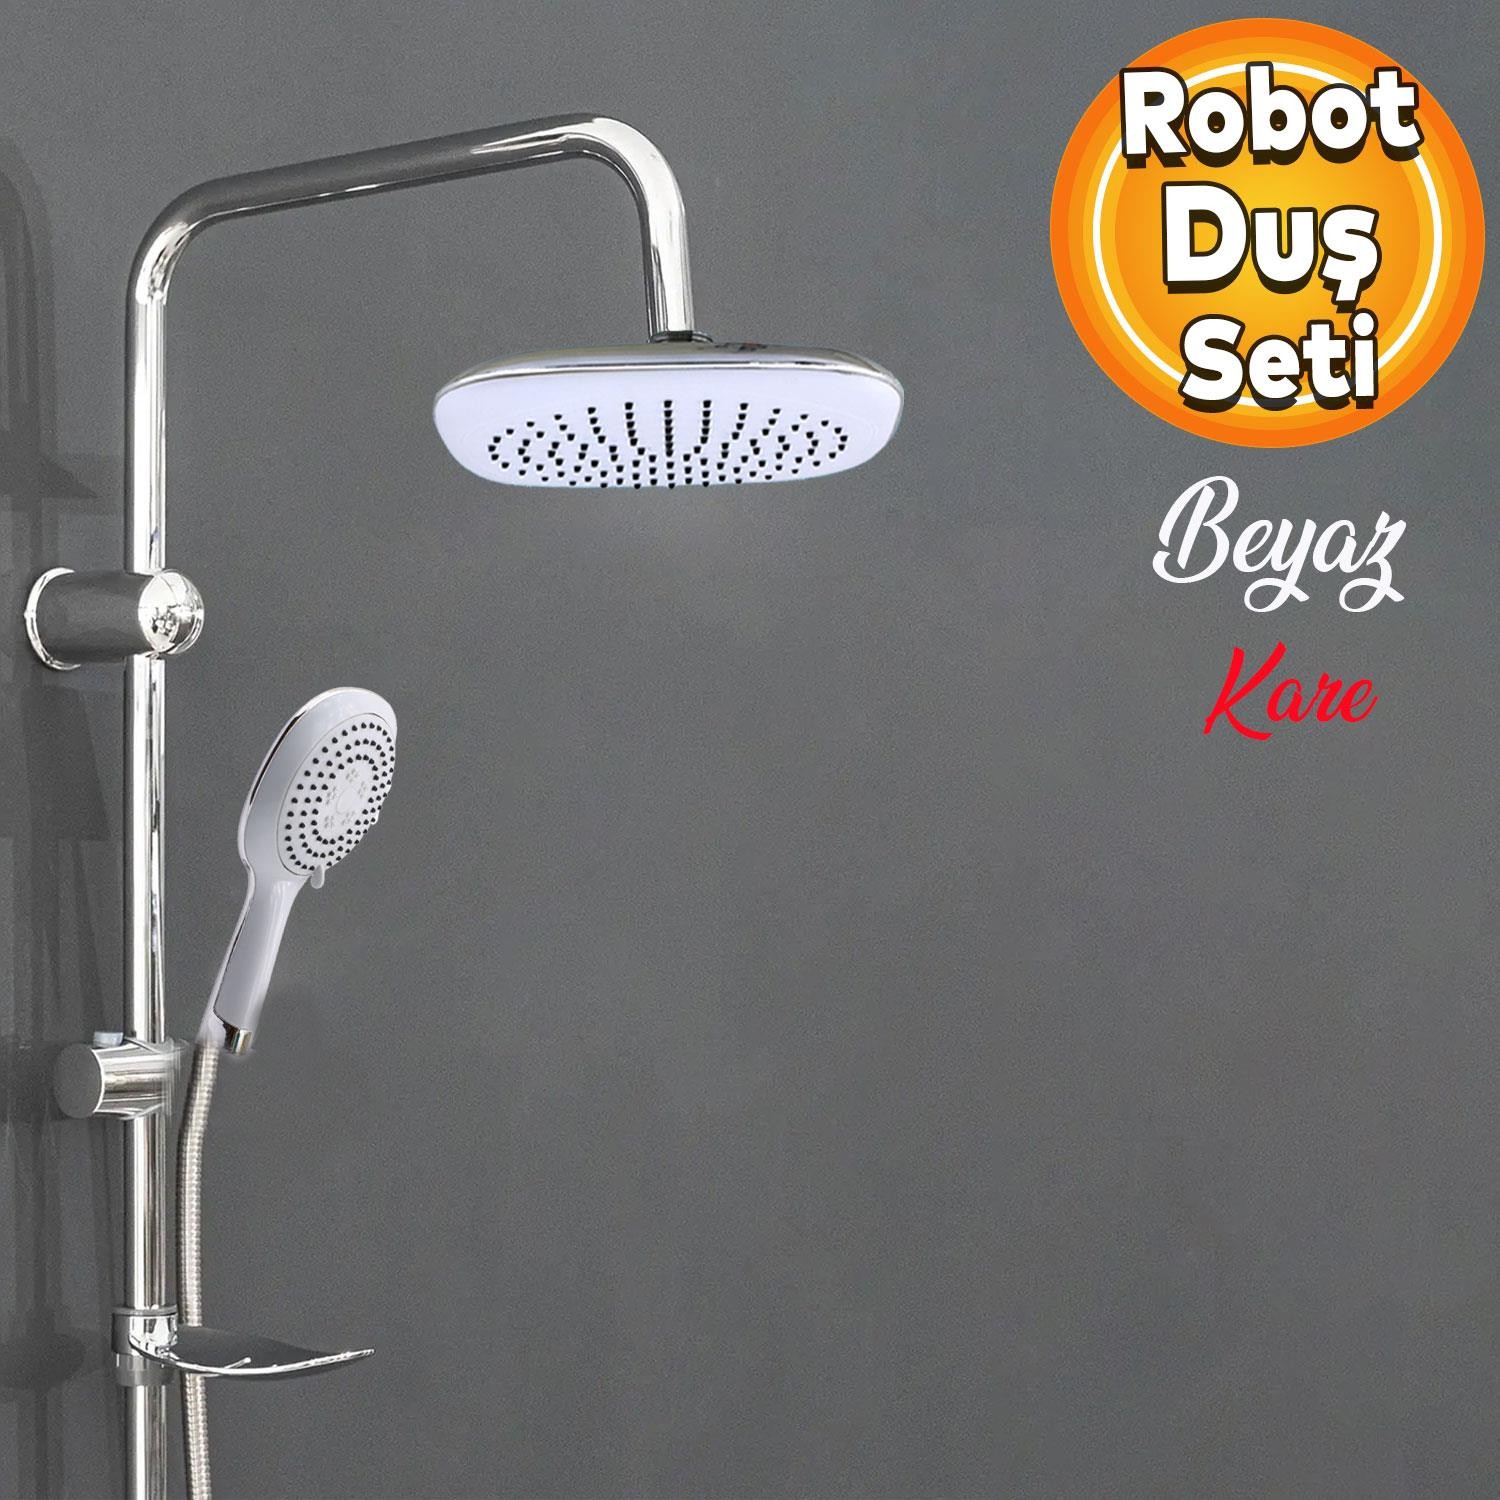 Robot Tepe Duş Seti Takımı Shower Yağmurlama Kare Banyo Masaj Duş Başlığı Sistemi Beyaz Krom